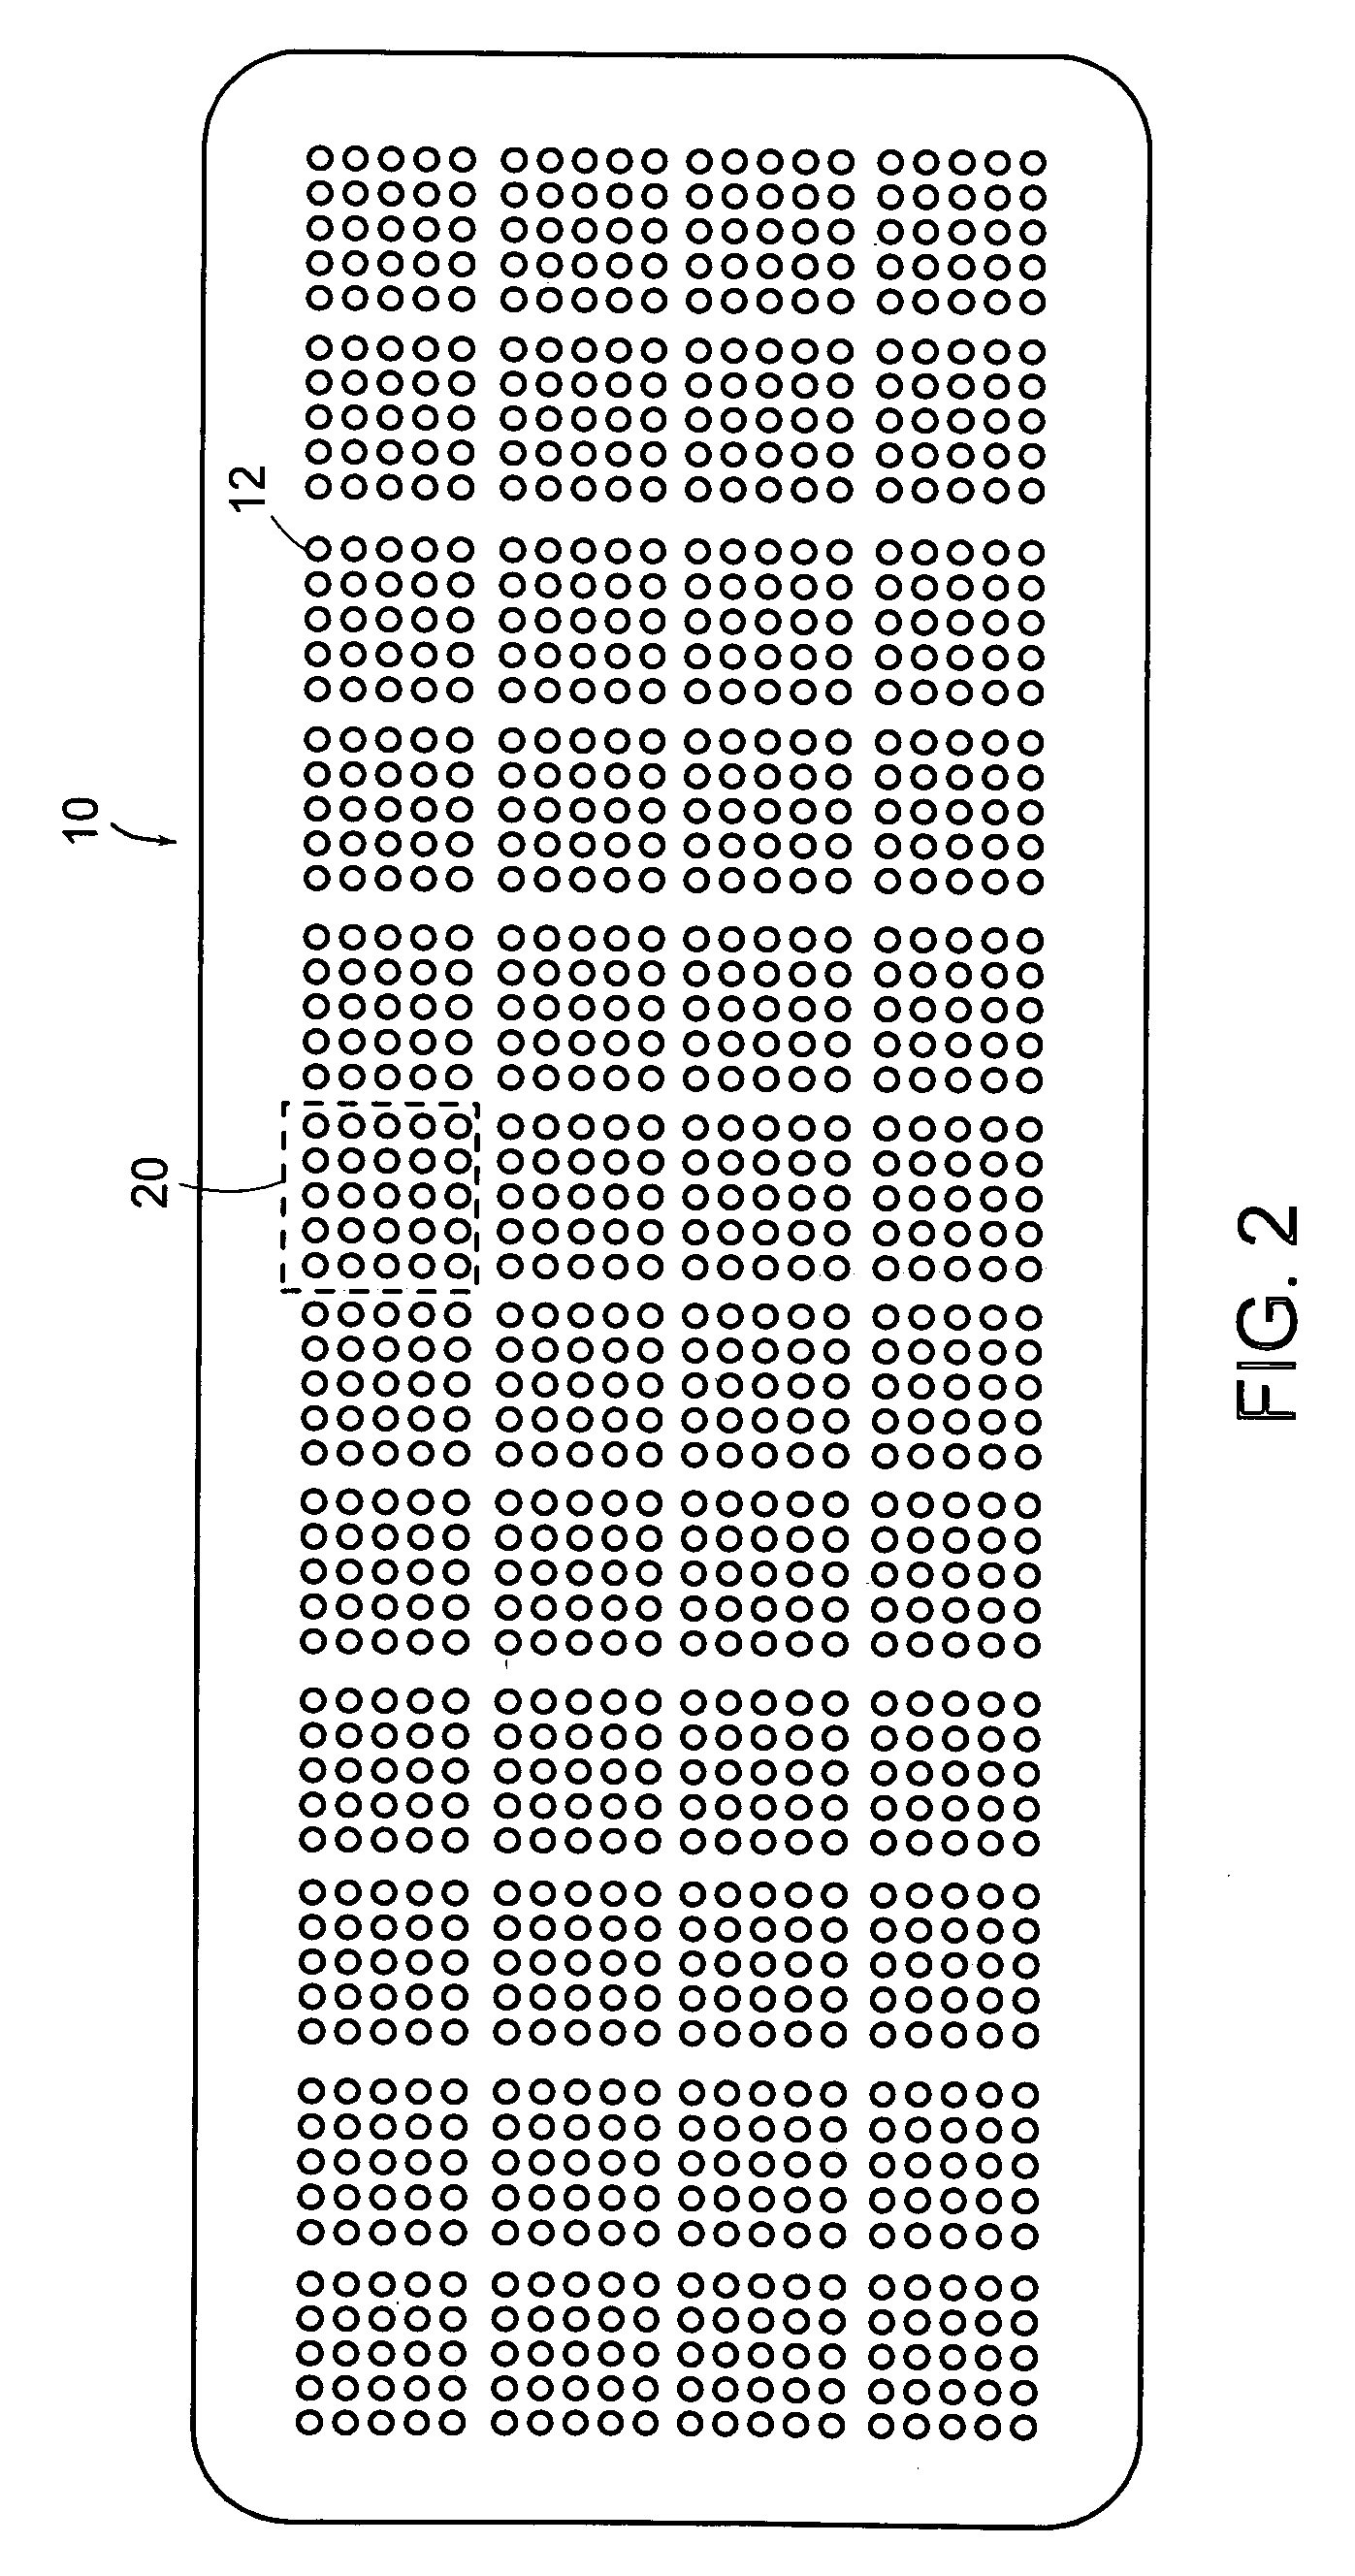 Nanoliter array loading